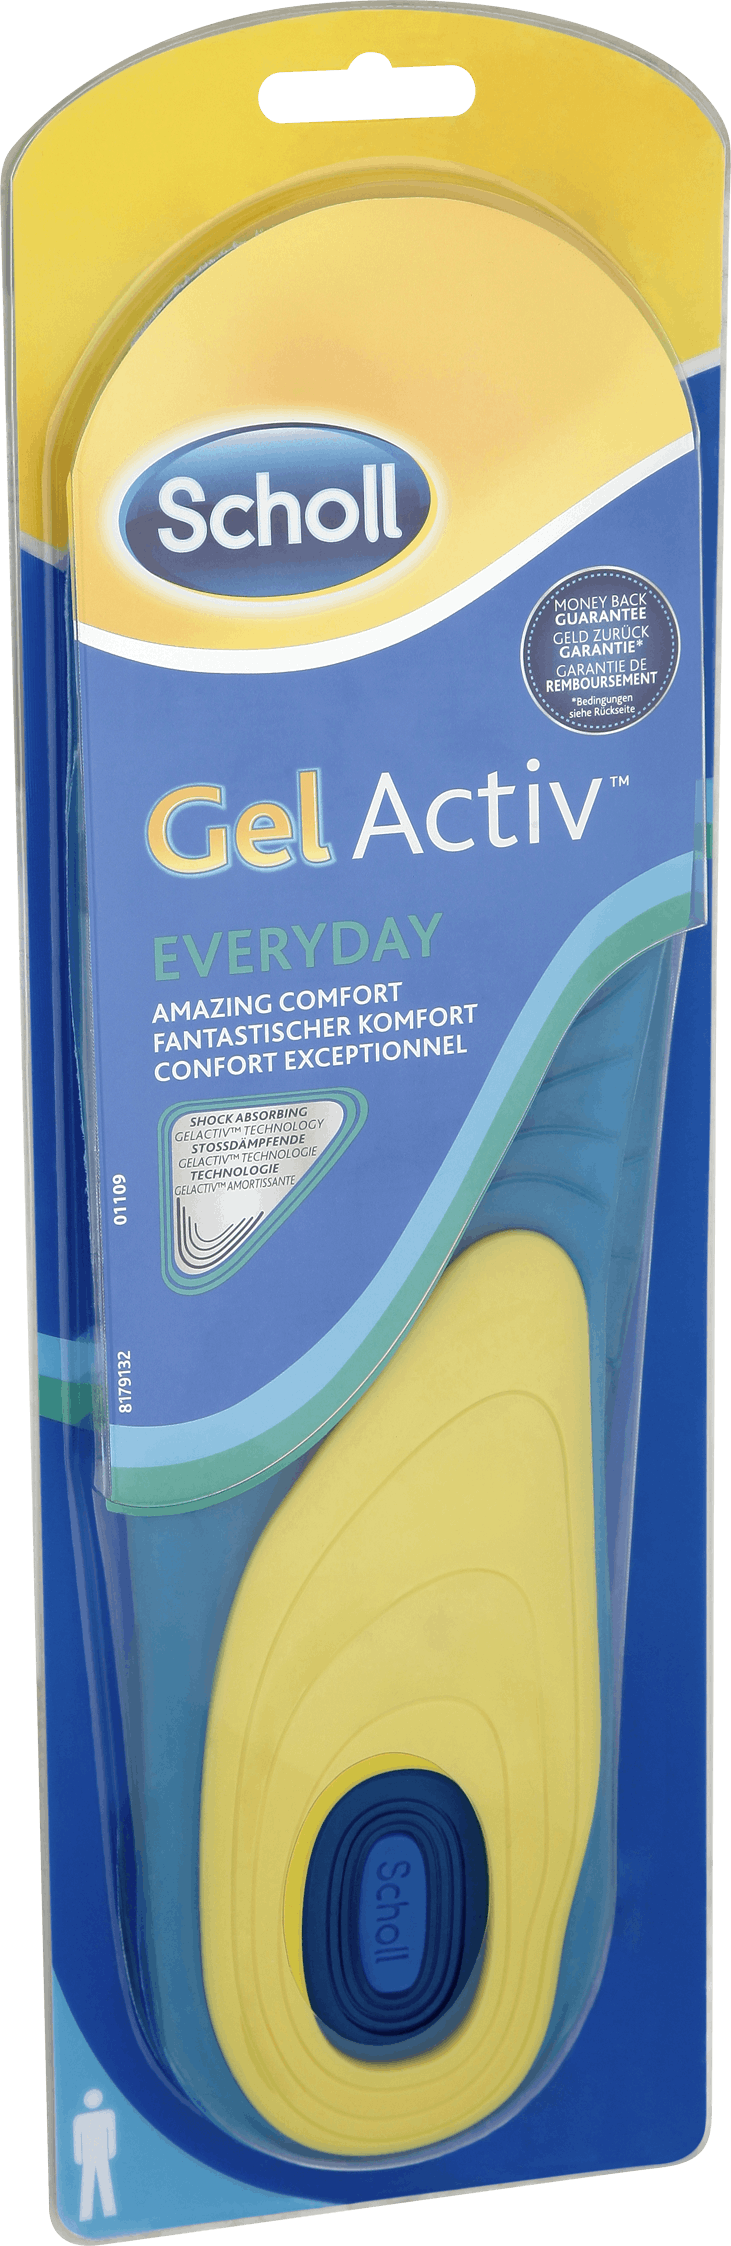 scholl gel active everyday